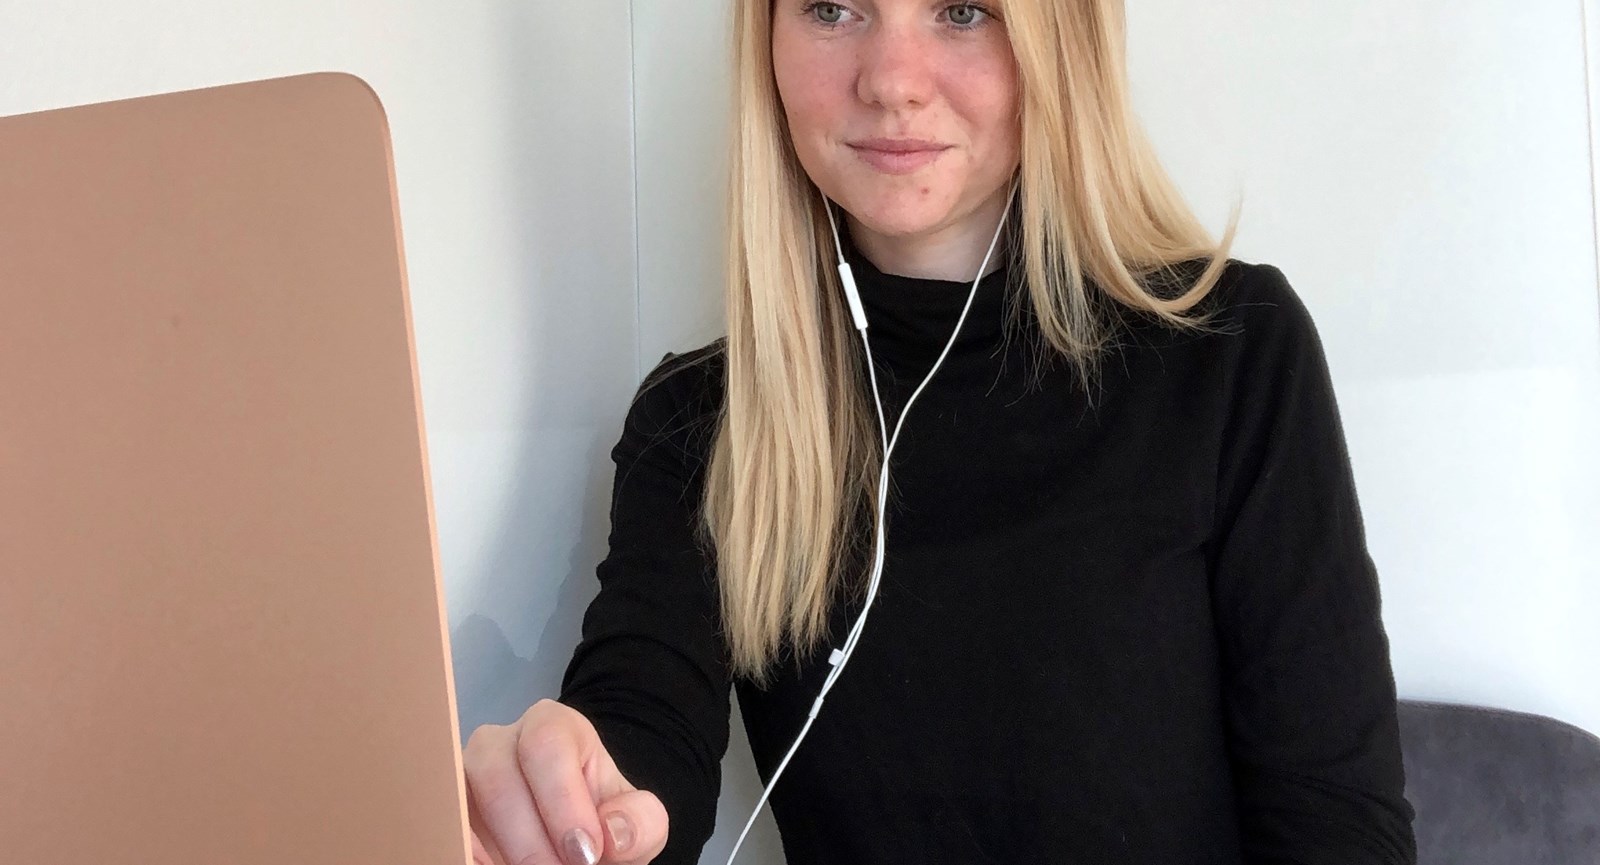 Markedsføringsøkonomstuderende Sara la Cour sidder ved et skrivebord og kigger på en bærbar computer med høretelefoner i ørerne og fingrene svævende over tastaturet.